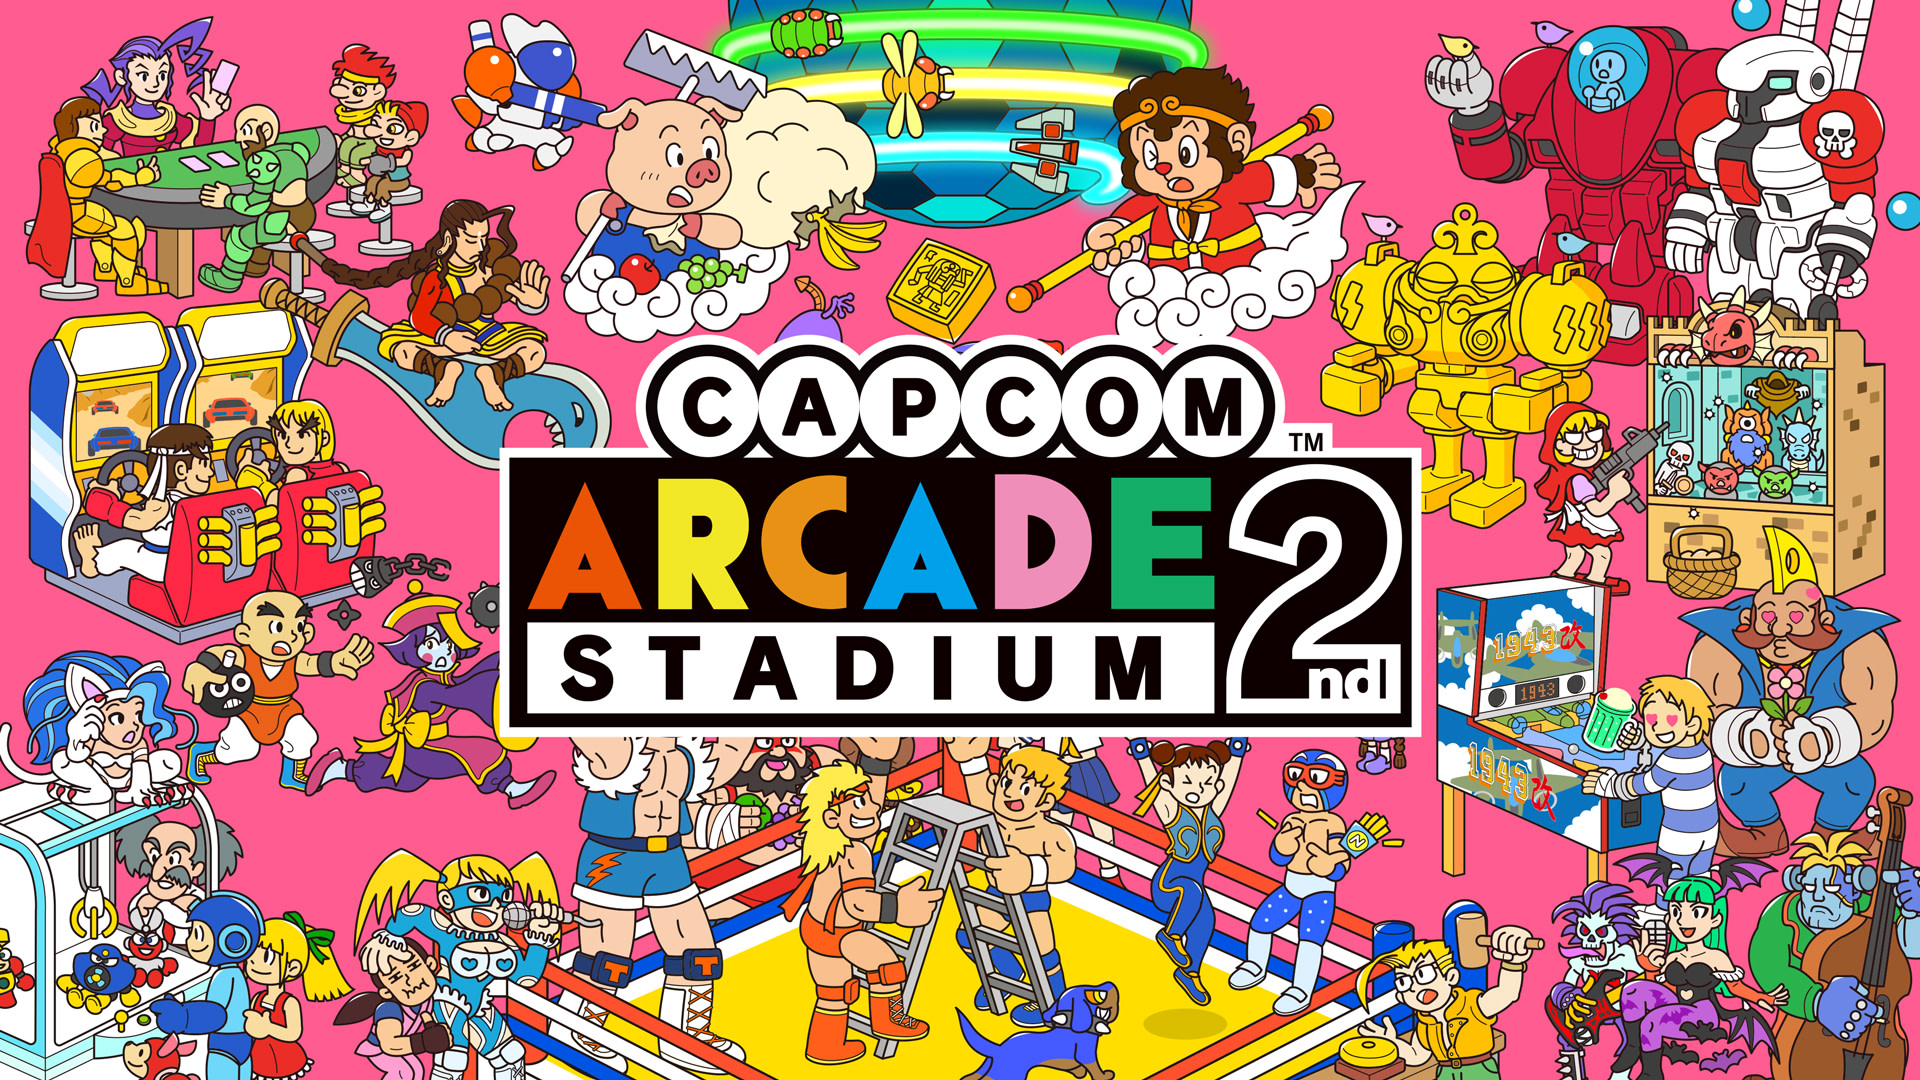 Capcom Arcade 2nd Stadium 1